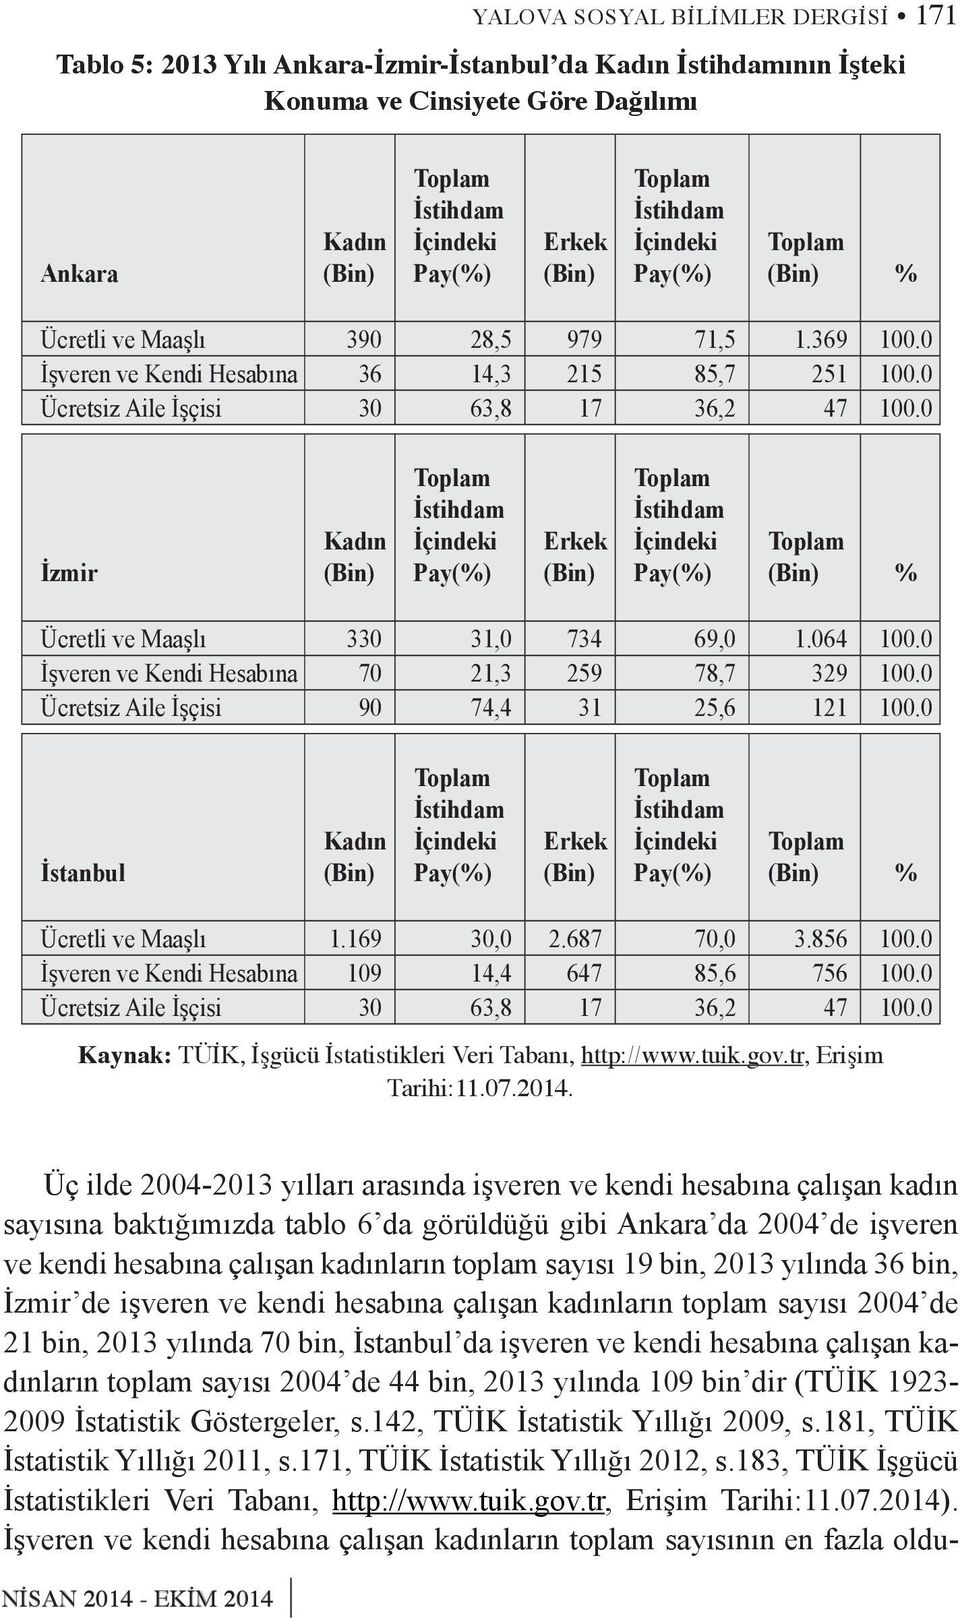 0 İzmir Kadın (Bin) Toplam İstihdam İçindeki Pay(%) Erkek (Bin) Toplam İstihdam İçindeki Pay(%) Toplam (Bin) % Ücretli ve Maaşlı 330 31,0 734 69,0 1.064 100.